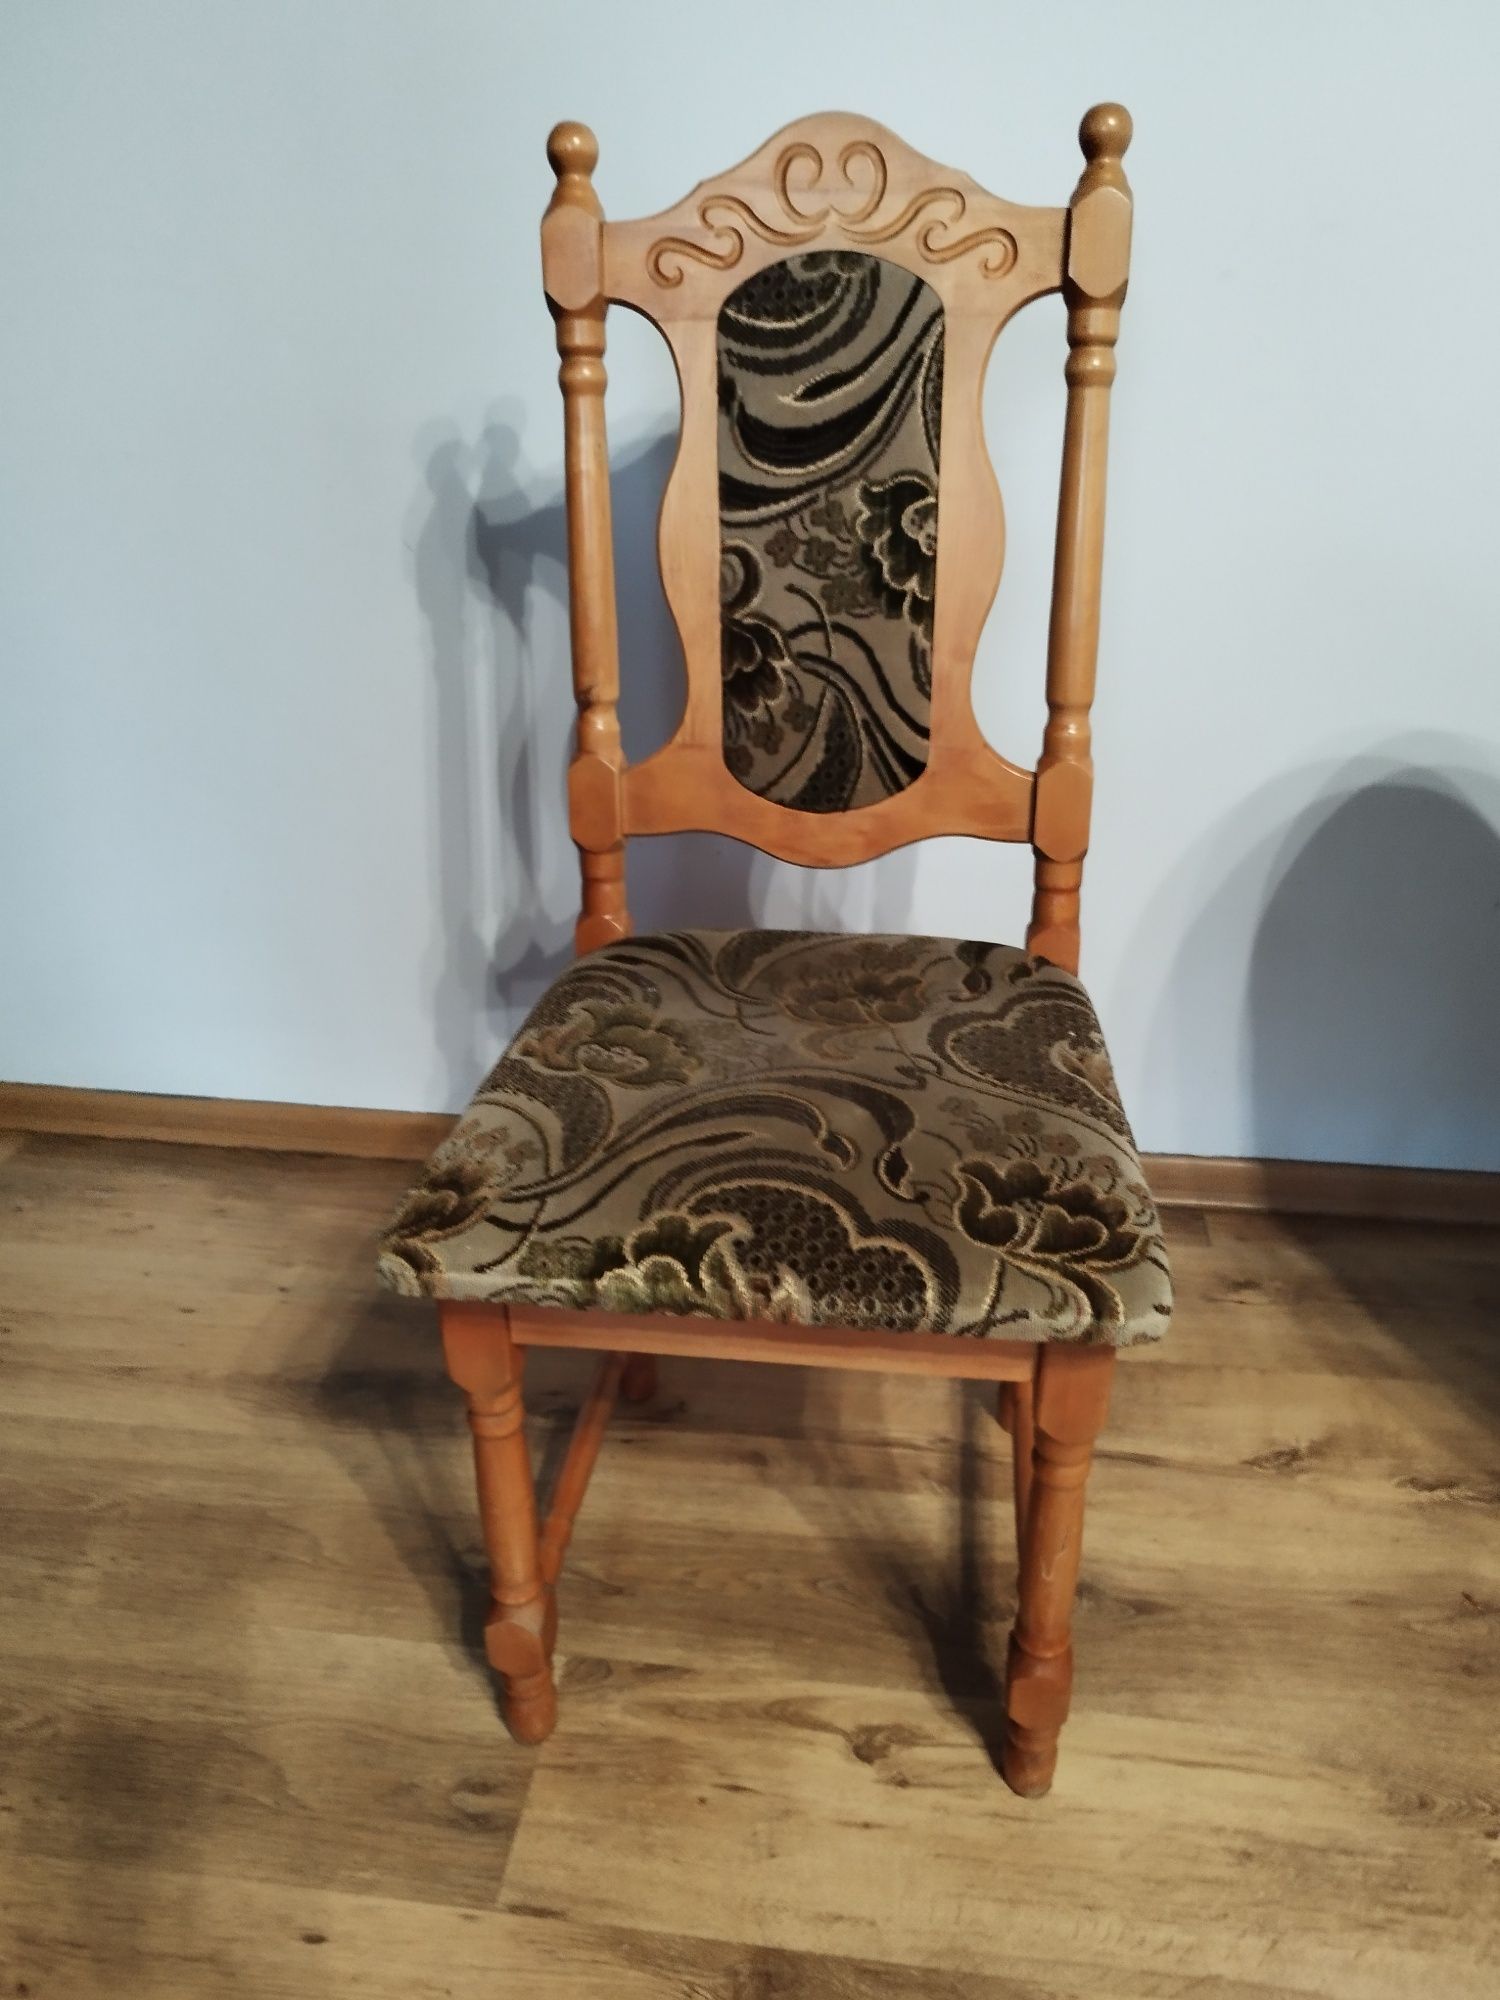 Krzesła 4 sztuki